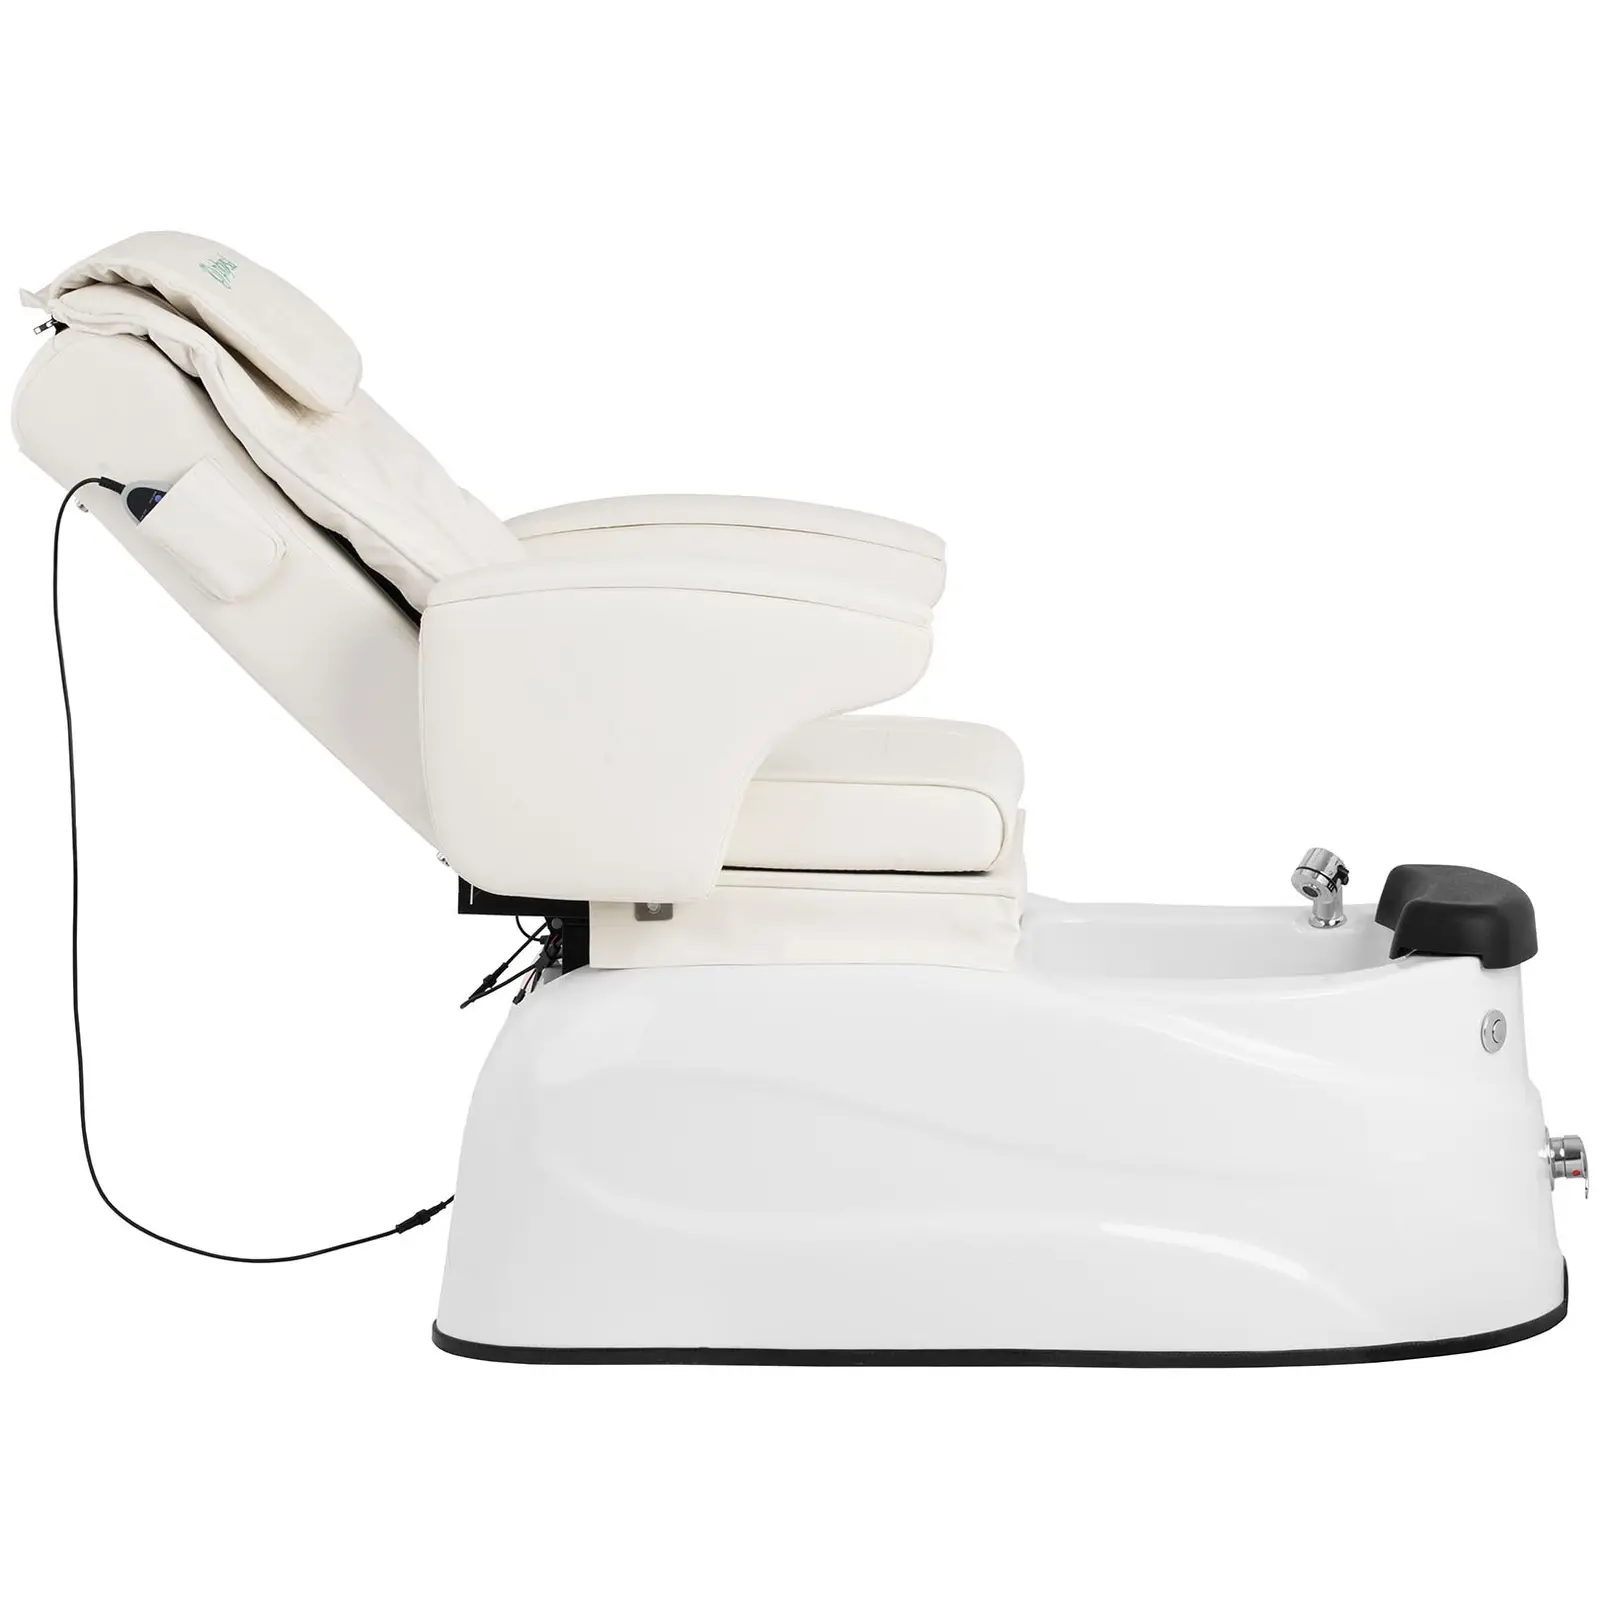 Poltrona pedicure elettrica - Con vasca pediluvio - 105 W - 150 kg - Bianca - Massaggio schiena e collo